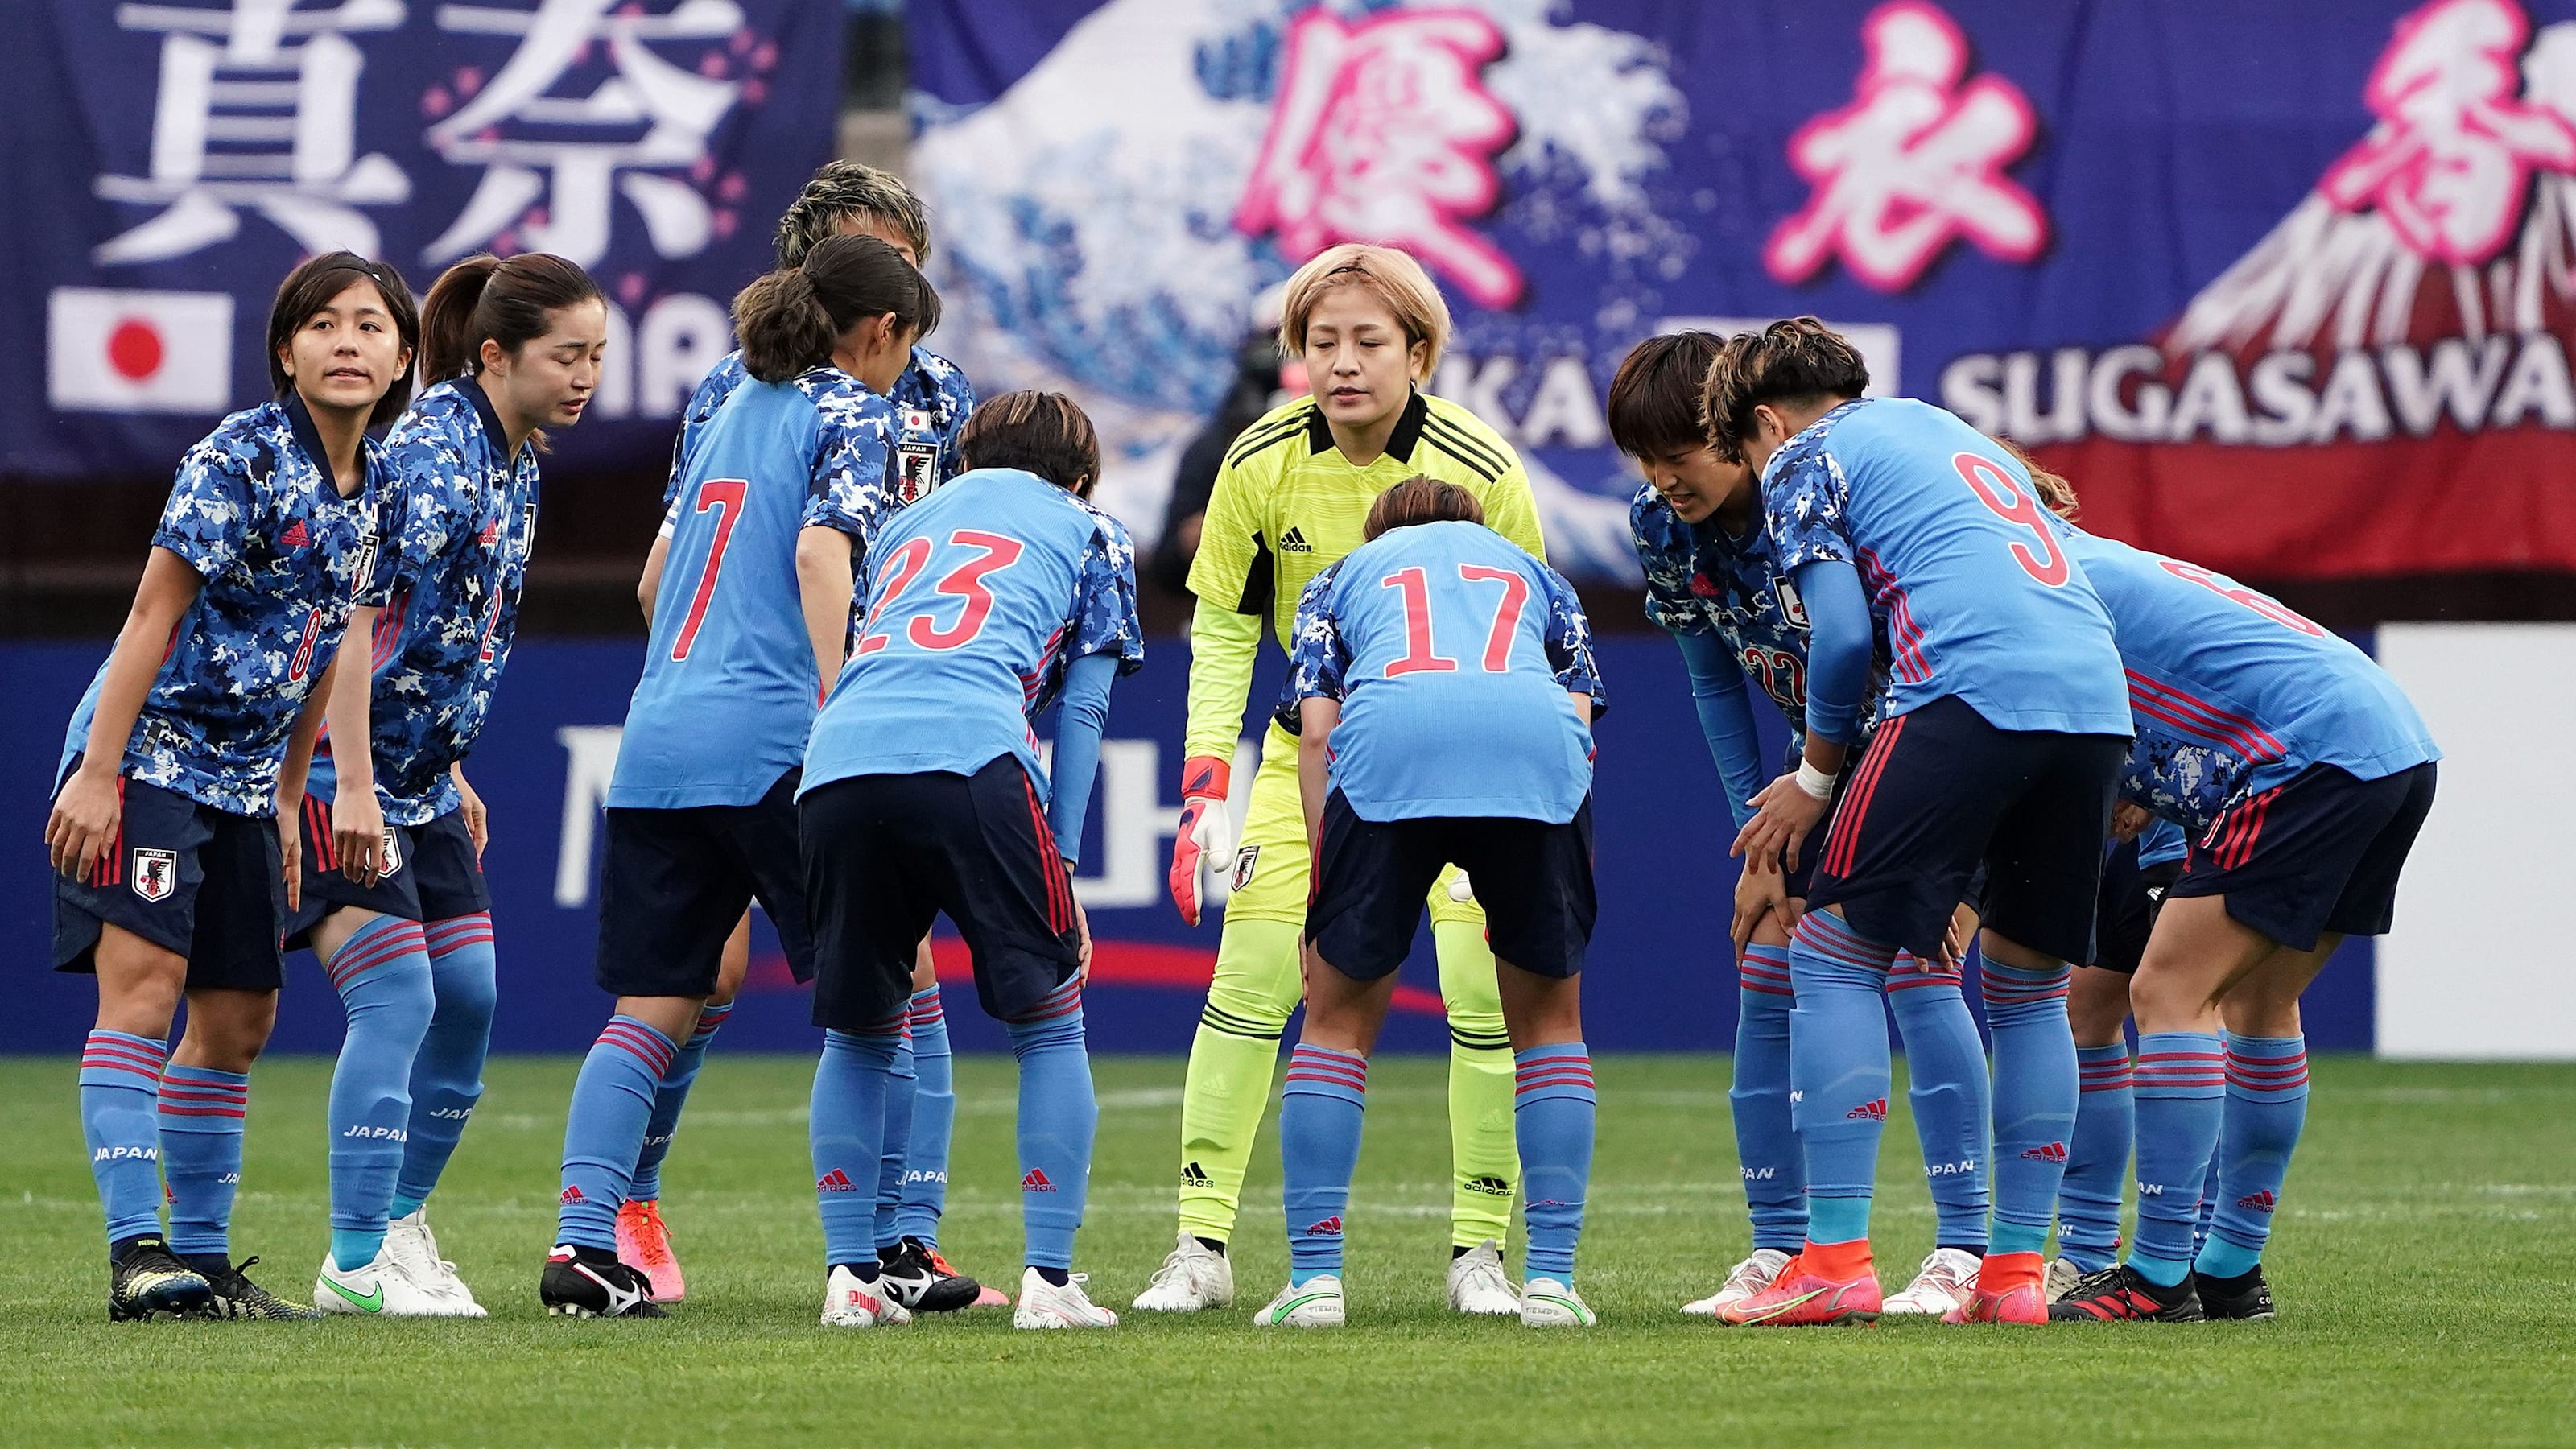 4月11日 国際親善試合 日本女子代表 Vs パナマ女子代表の放送予定 東京五輪へなでしこジャパン強化の場